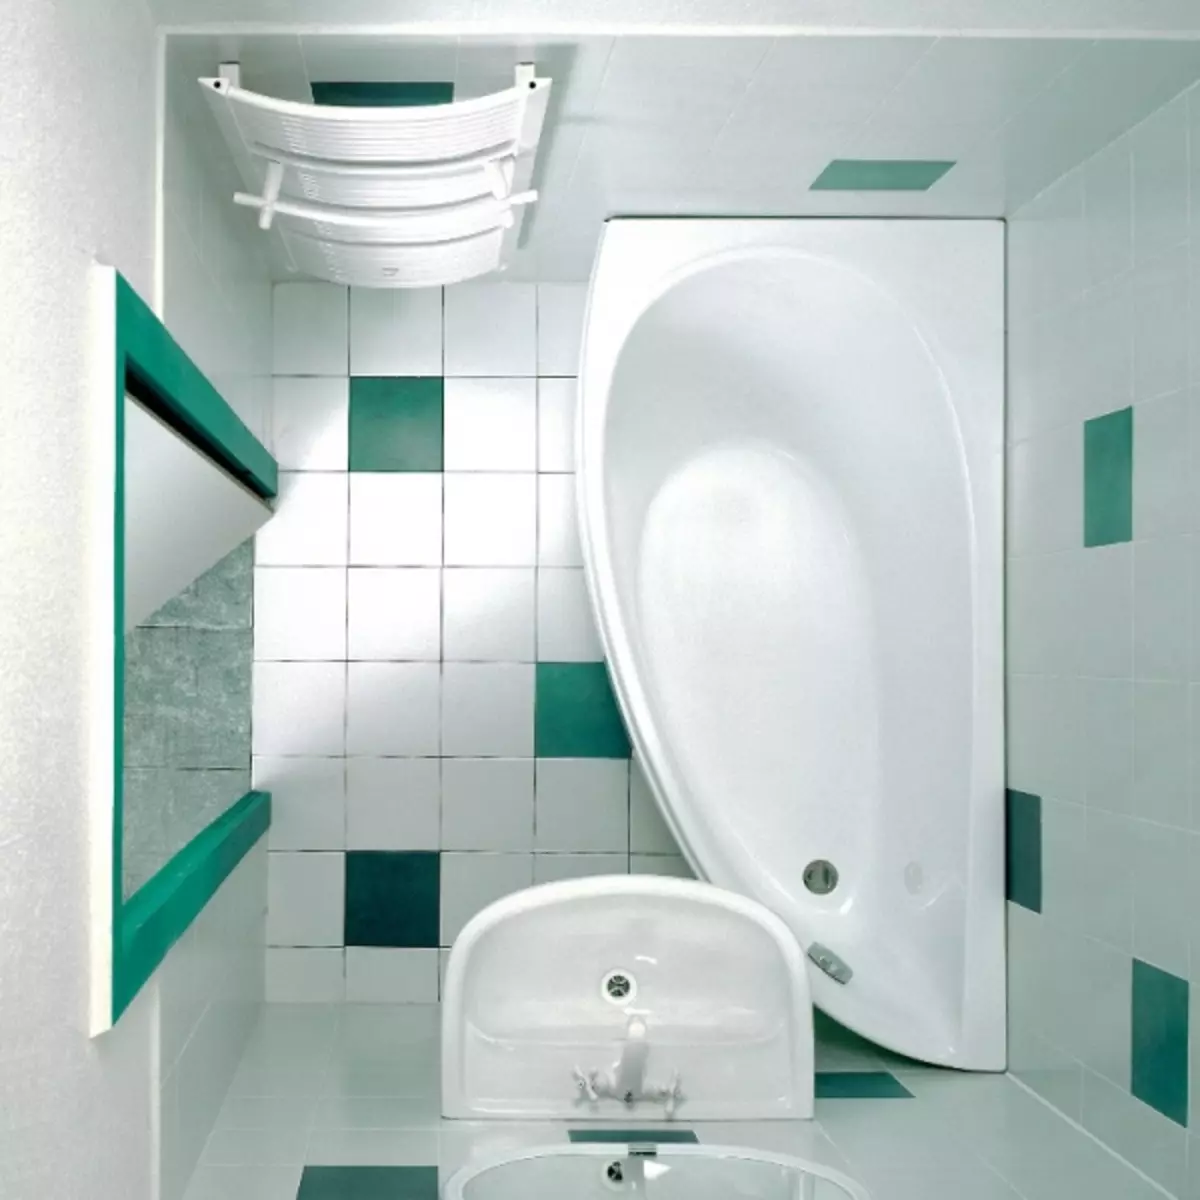 લિટલ બાથરૂમ ડિઝાઇન: સપરેટલી સમસ્યાને હલ કરો